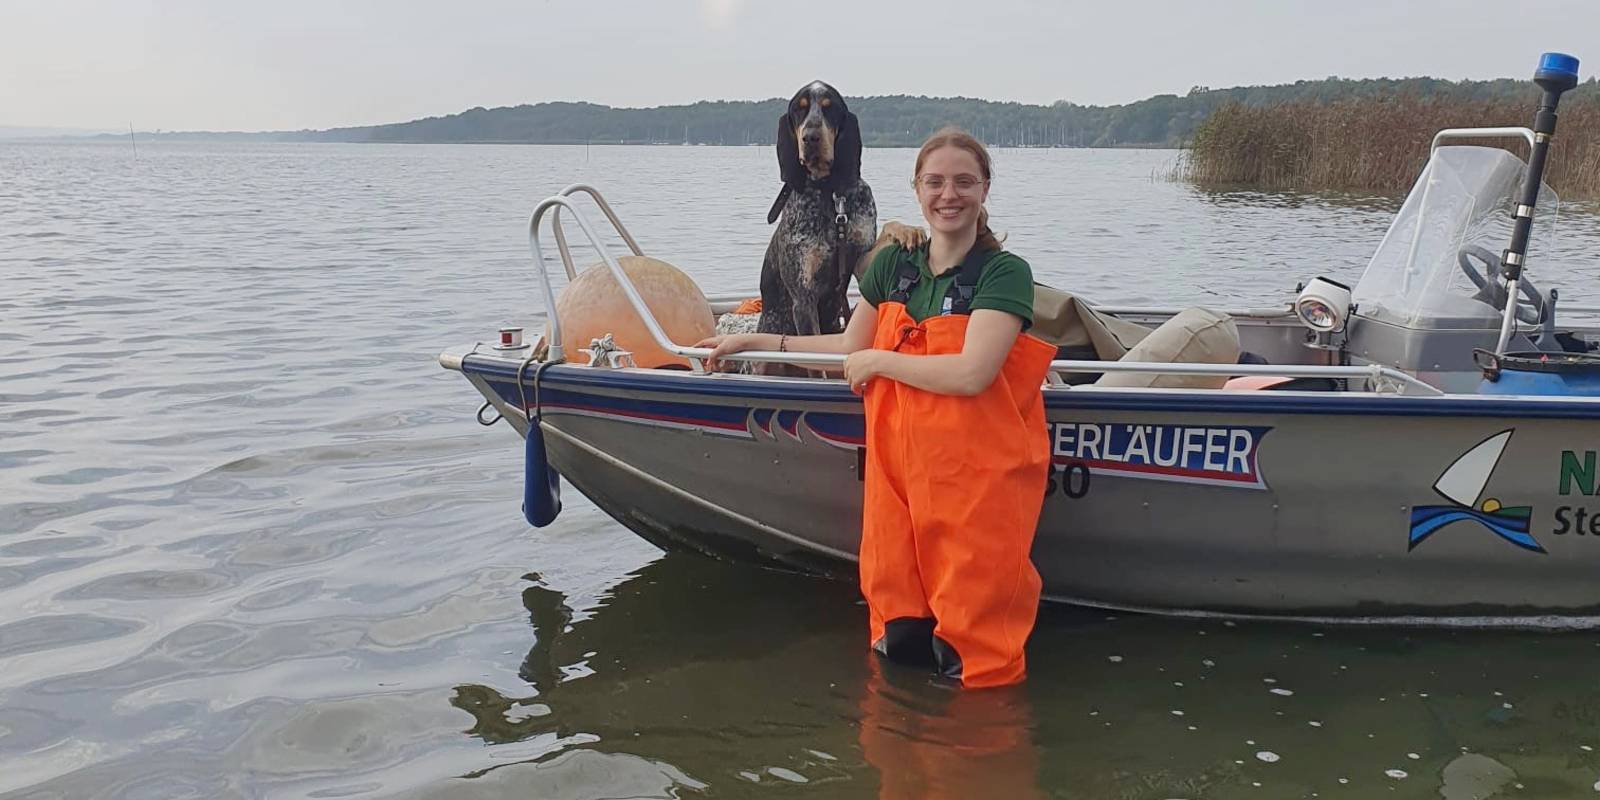 Eine Frau trägt eine orangefarbene Wathose und steht vor einem Boot im Wasser des Steinhuder Meeres. Im Boot sitzt ein Hund und schaut mit der Frau in die Kamera.